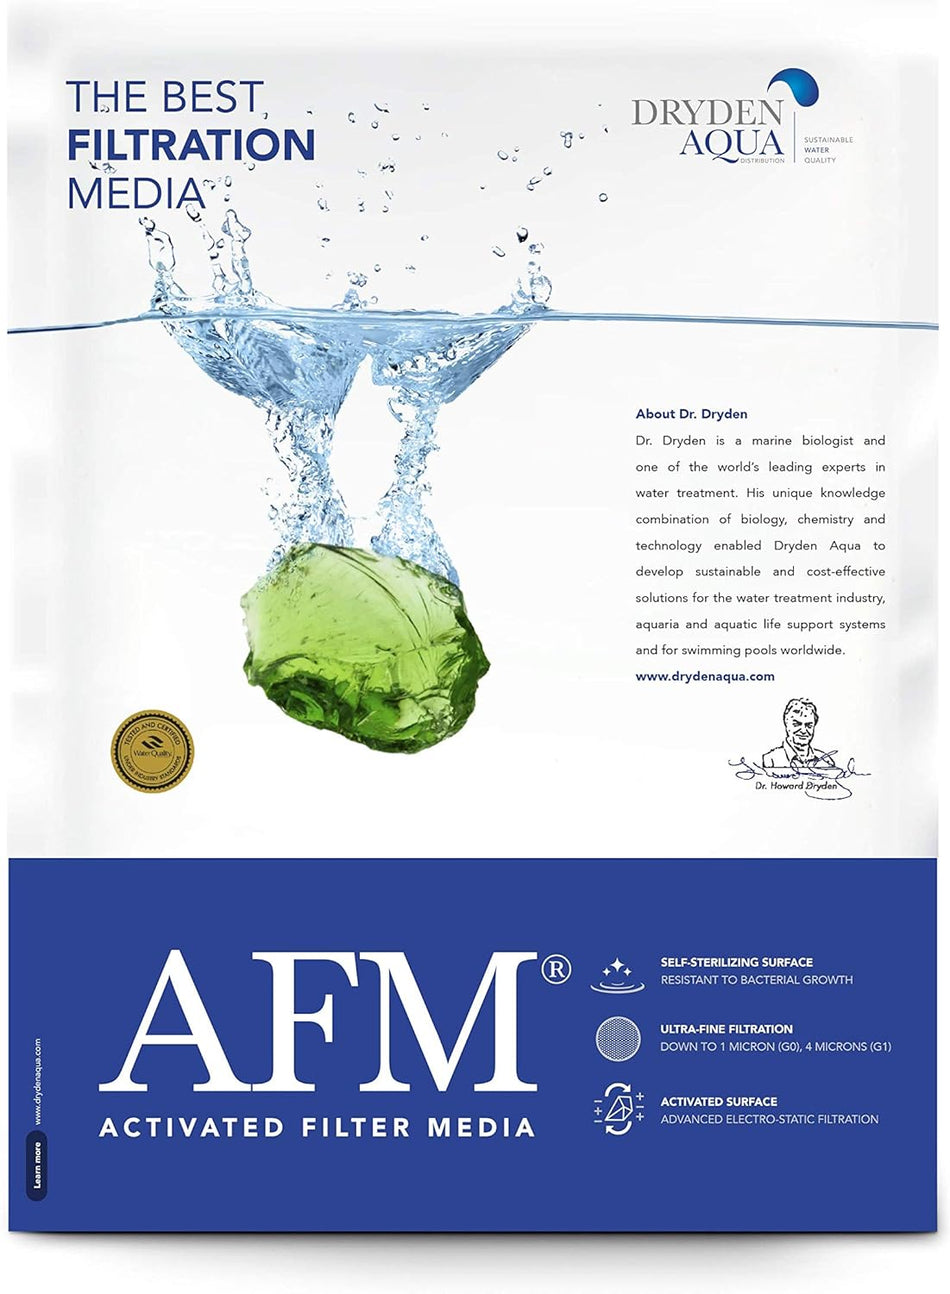 AFM graad 3 | 2,0 - 4,0 mm - 21 kg